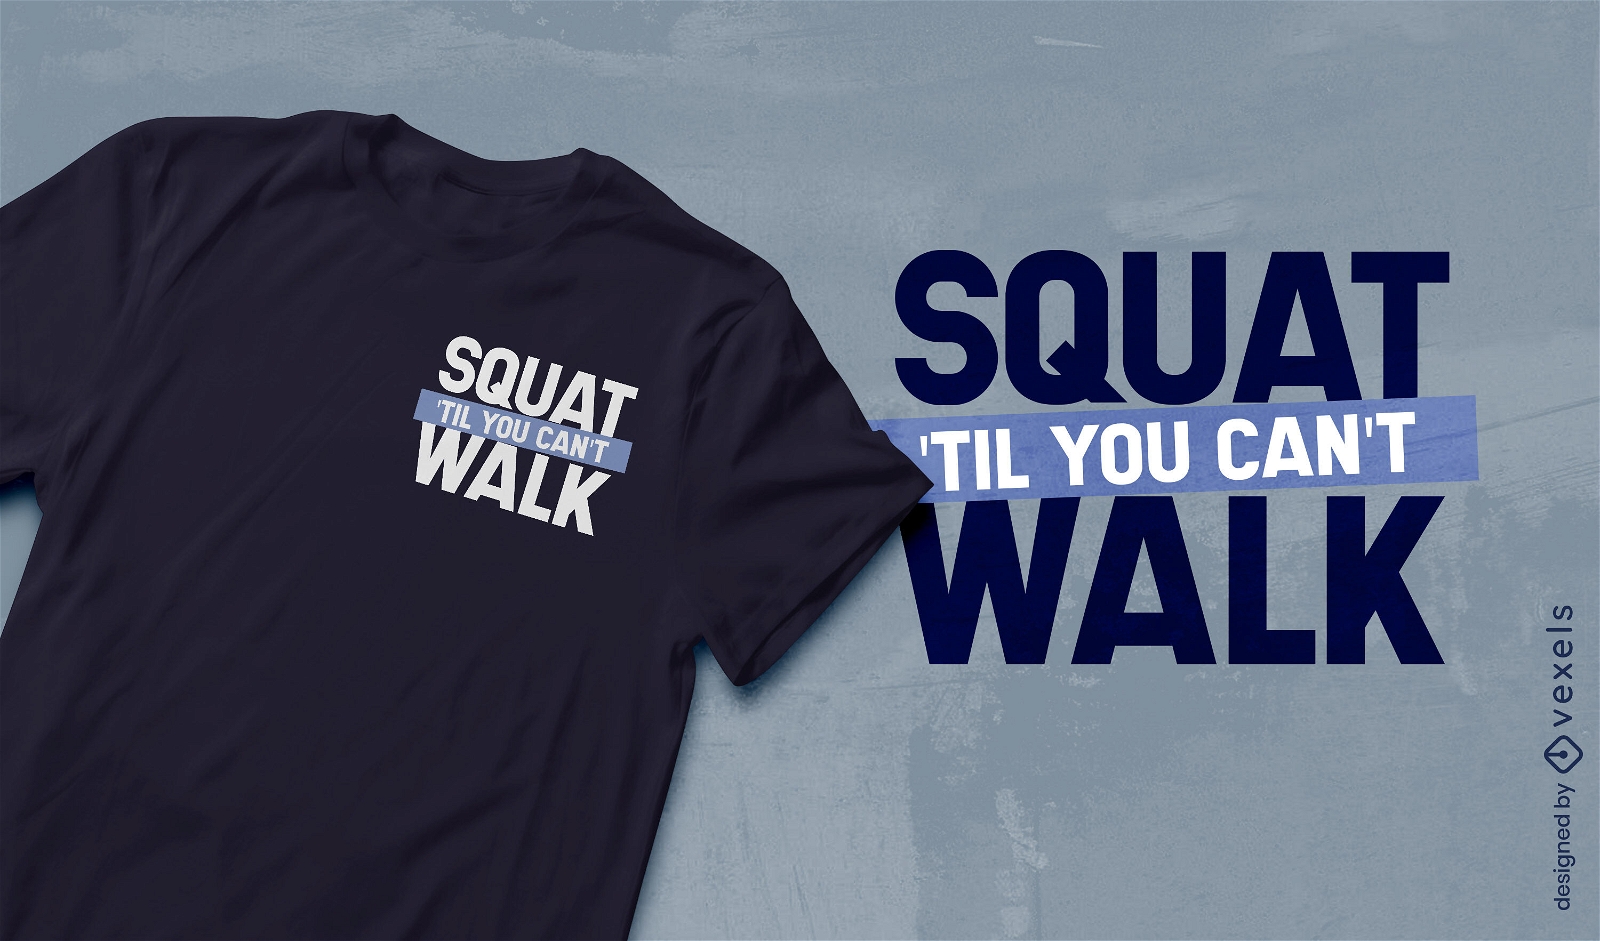 Squat gym motivational quote t-shirt design